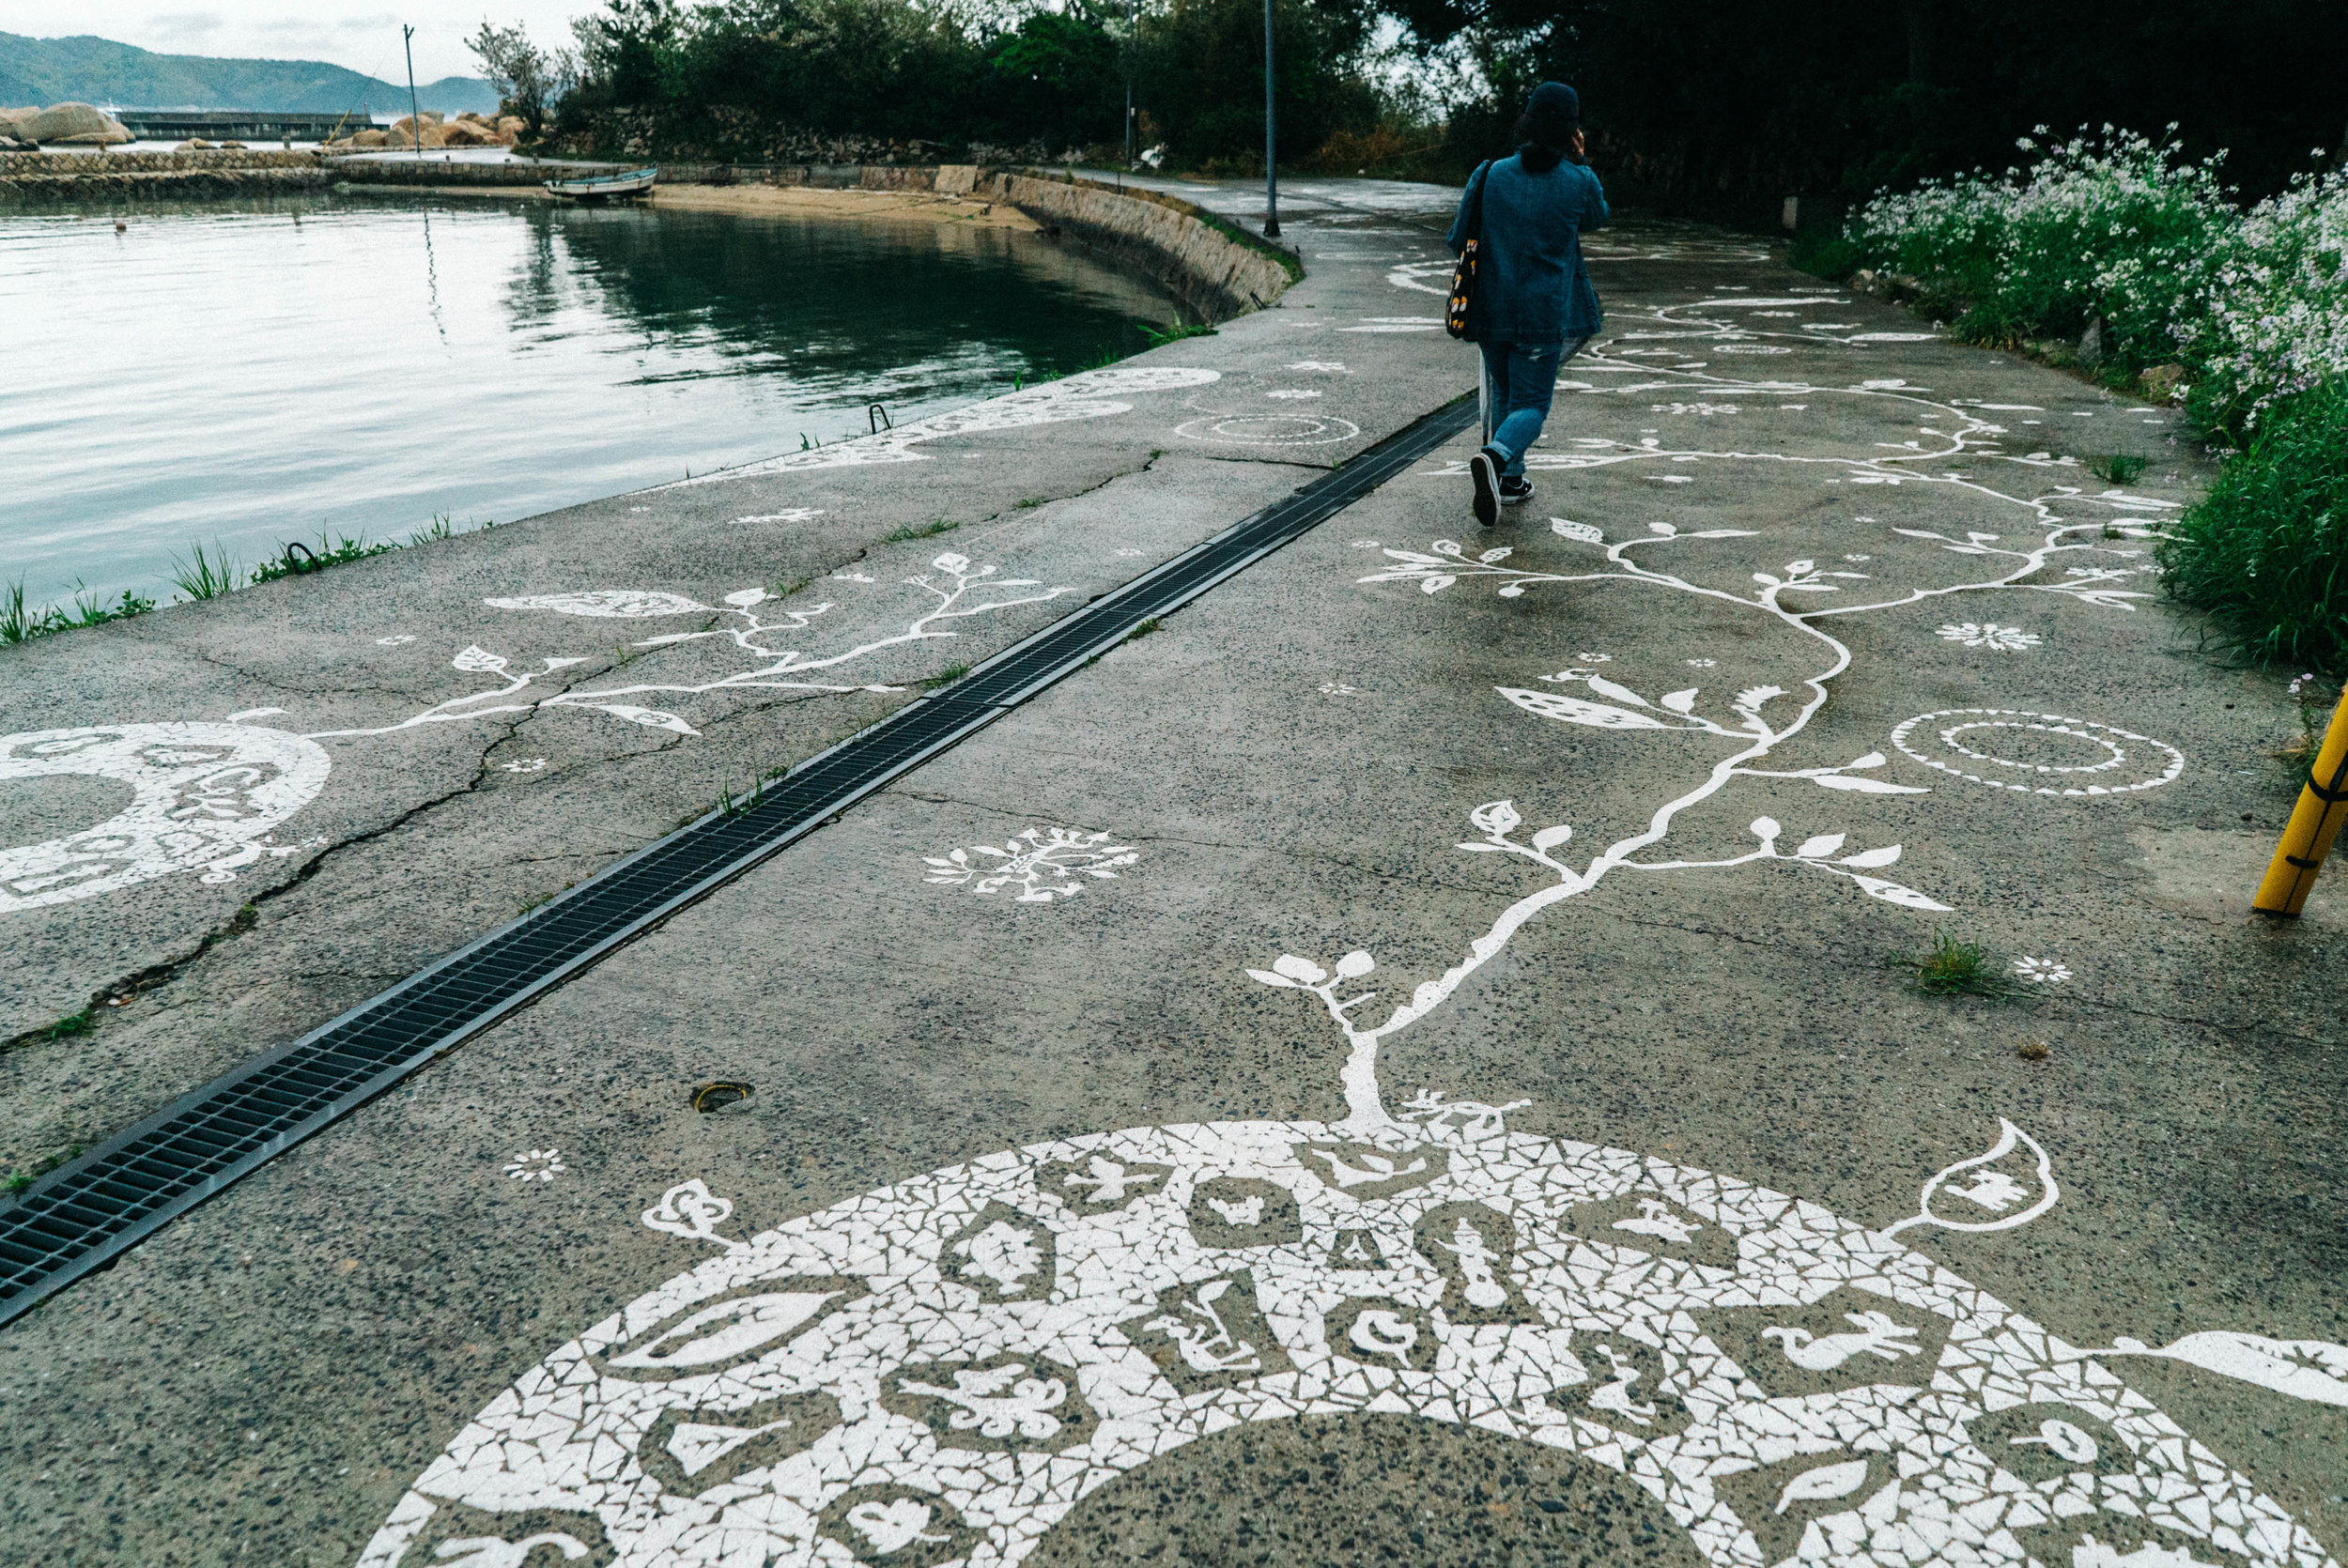  art along the pavement near Inujima port 